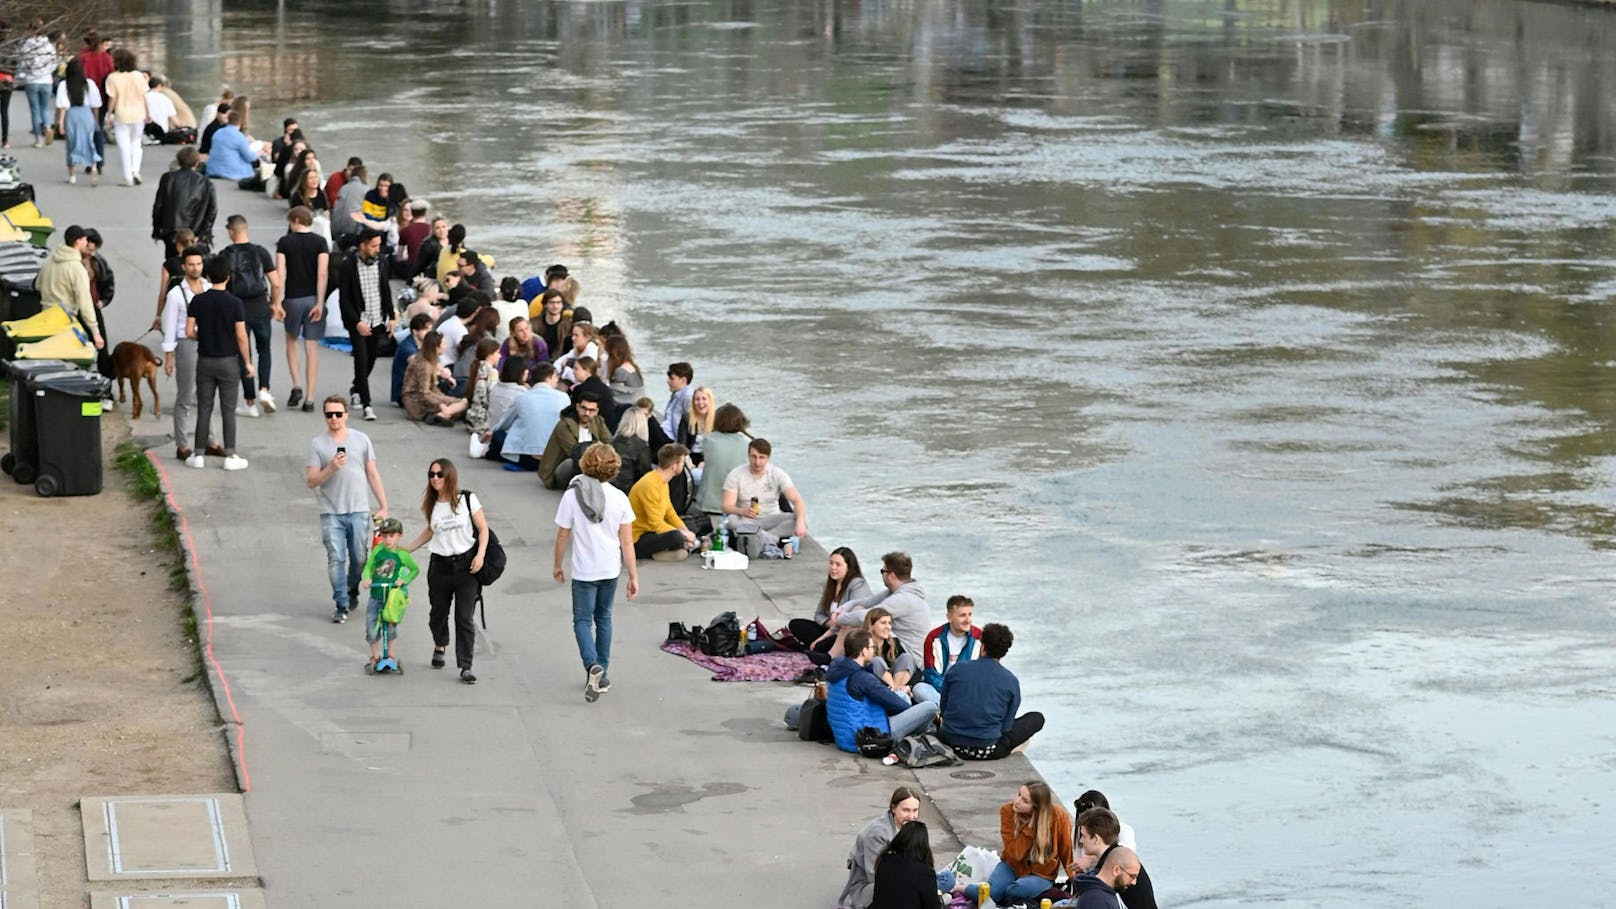 Der Donaukanal in Wien ist ein bekannter Hotspot für Jugendliche und junge Menschen.